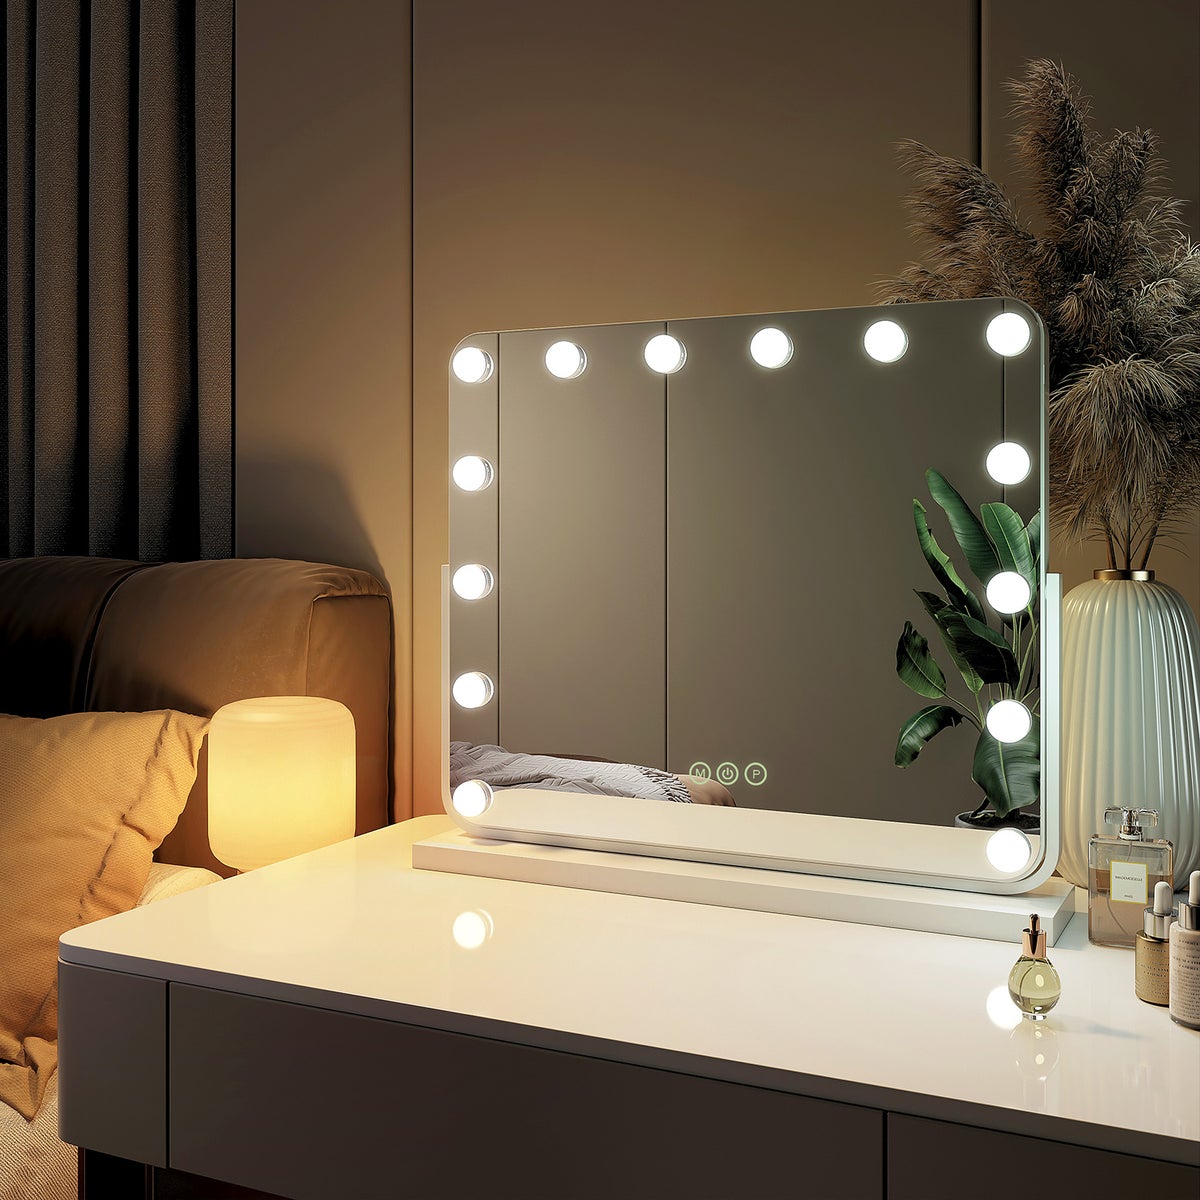 EMKE Kosmetikspiegel Hollywood Spiegel mit Beleuchtung 360 ° Drehbar Tischspiegel 3 Farbe Licht,14 Dimmbaren LED-Leuchtmitteln,Speicherfunktion,7 x Vergrößerungsspiegel,Weiß,60 x 52 cm